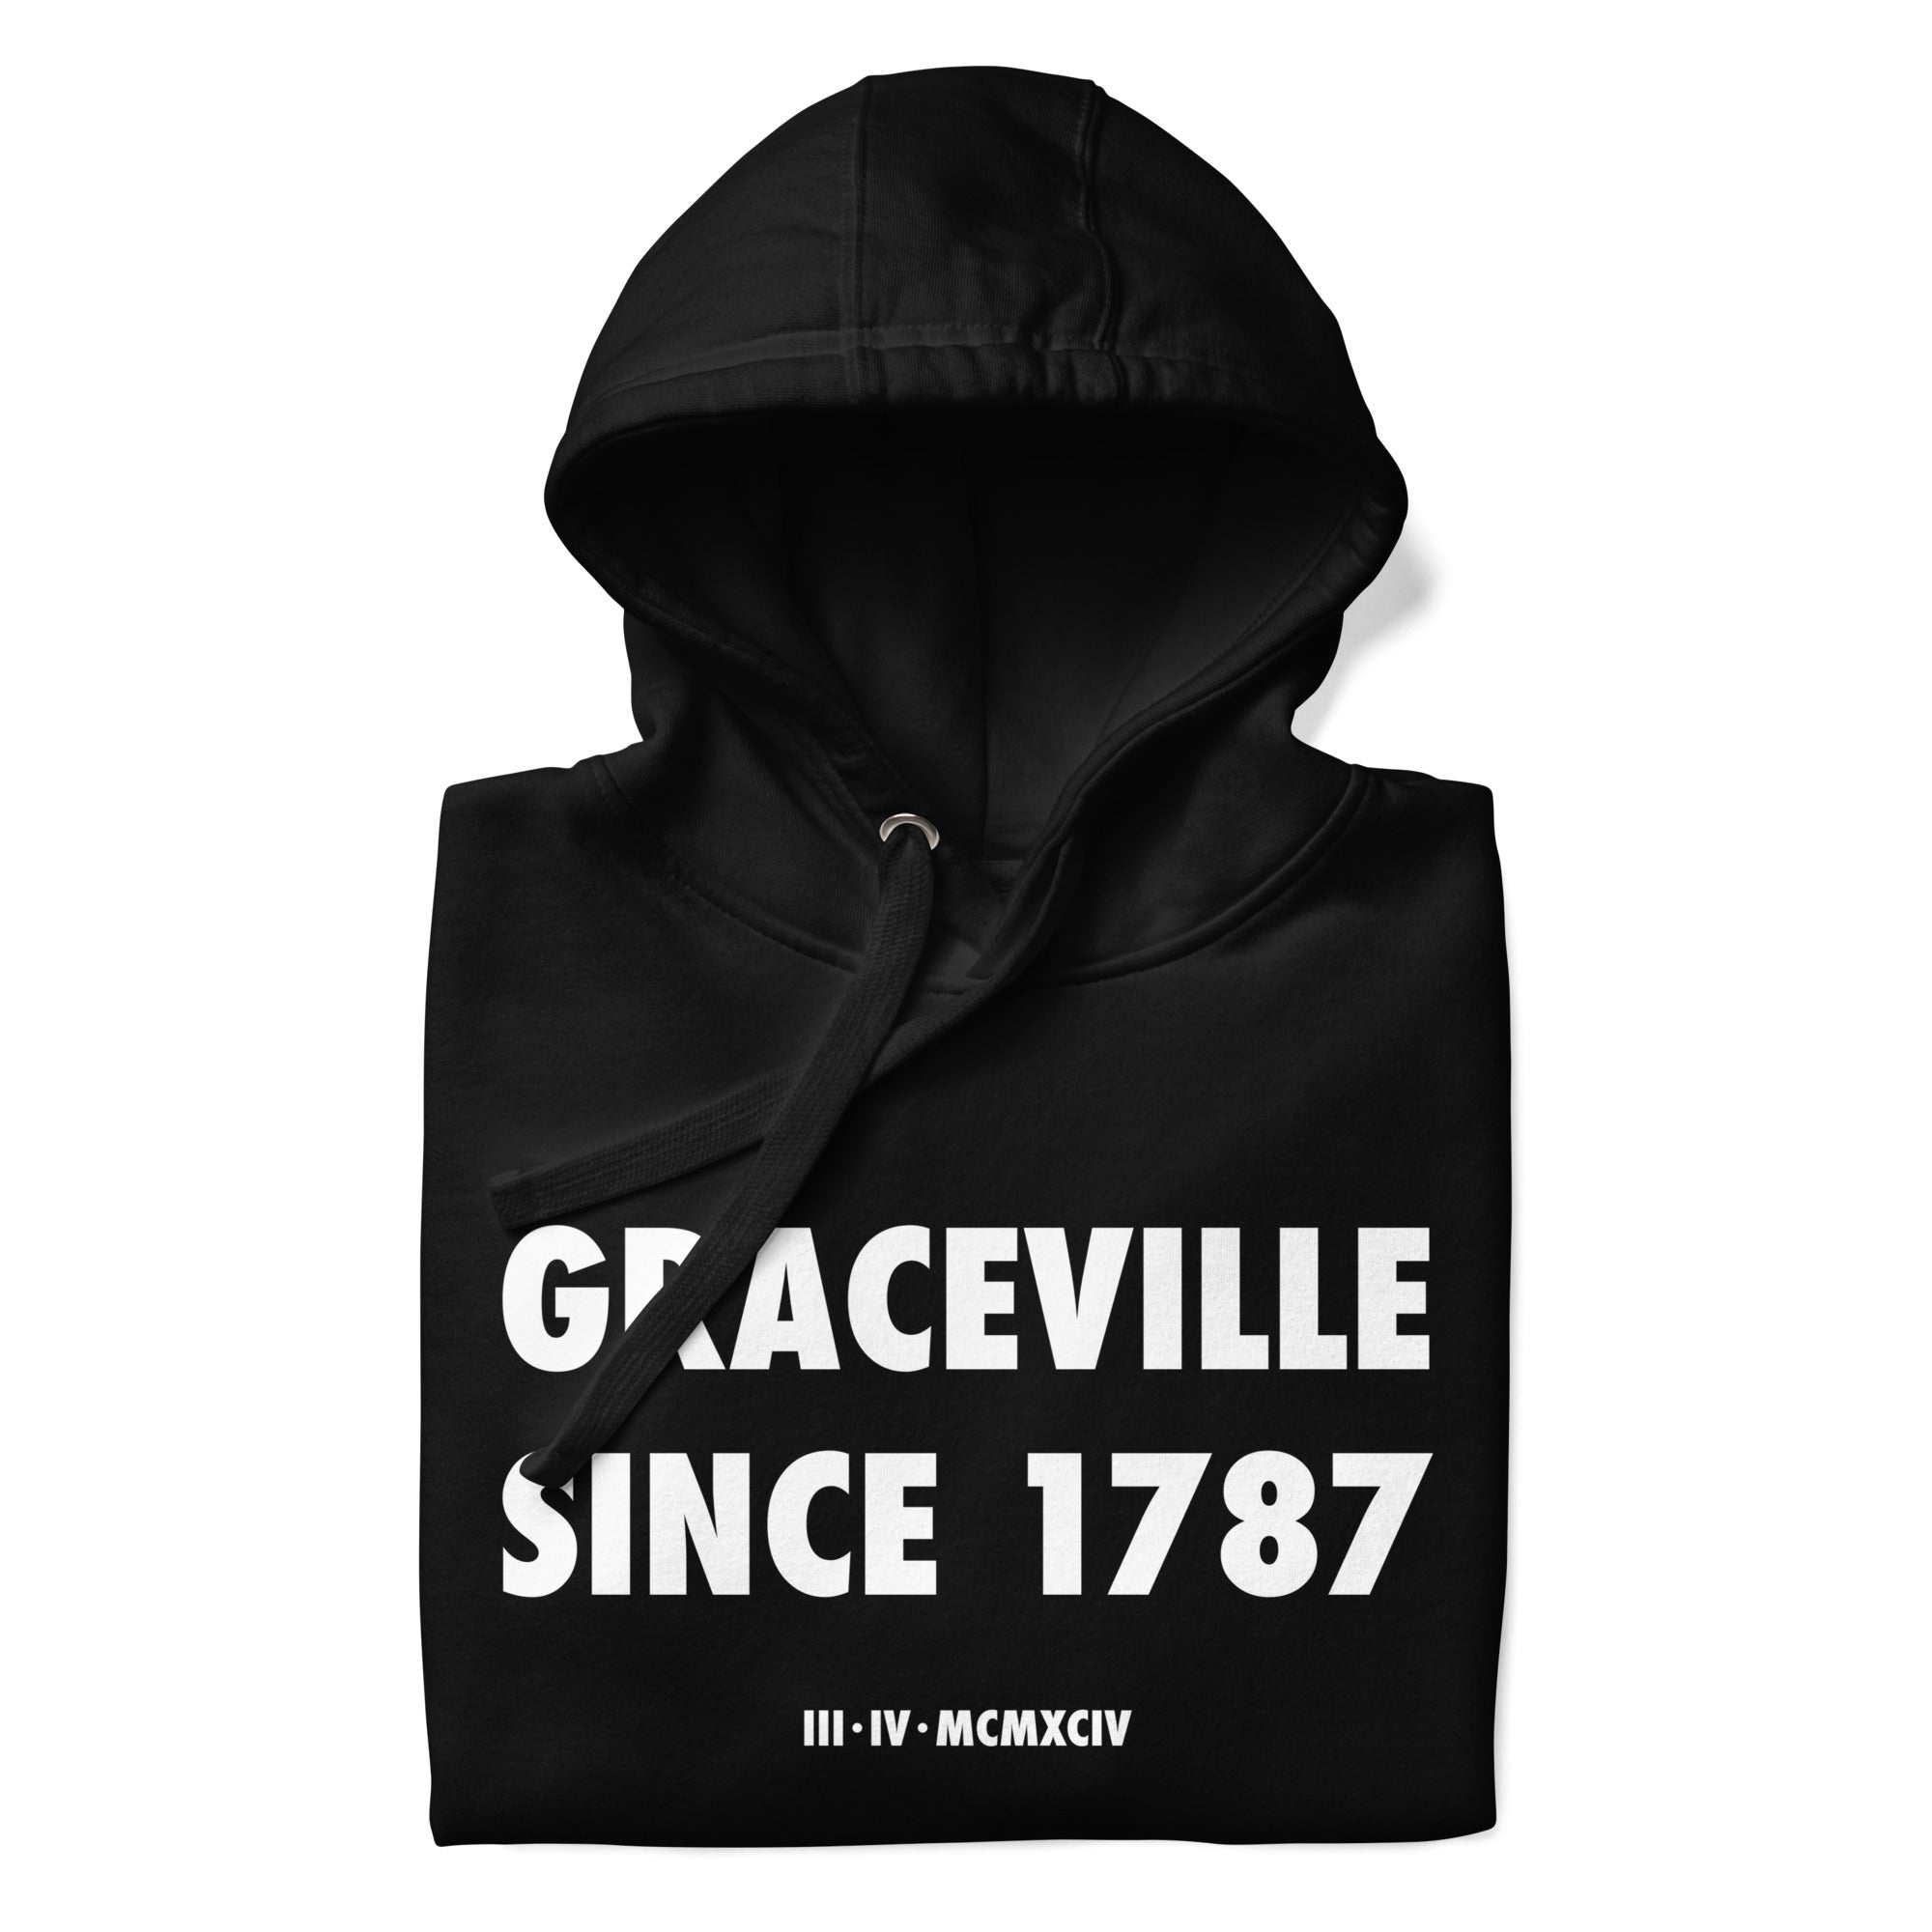 Graceville 1787 Hoodie (Black)